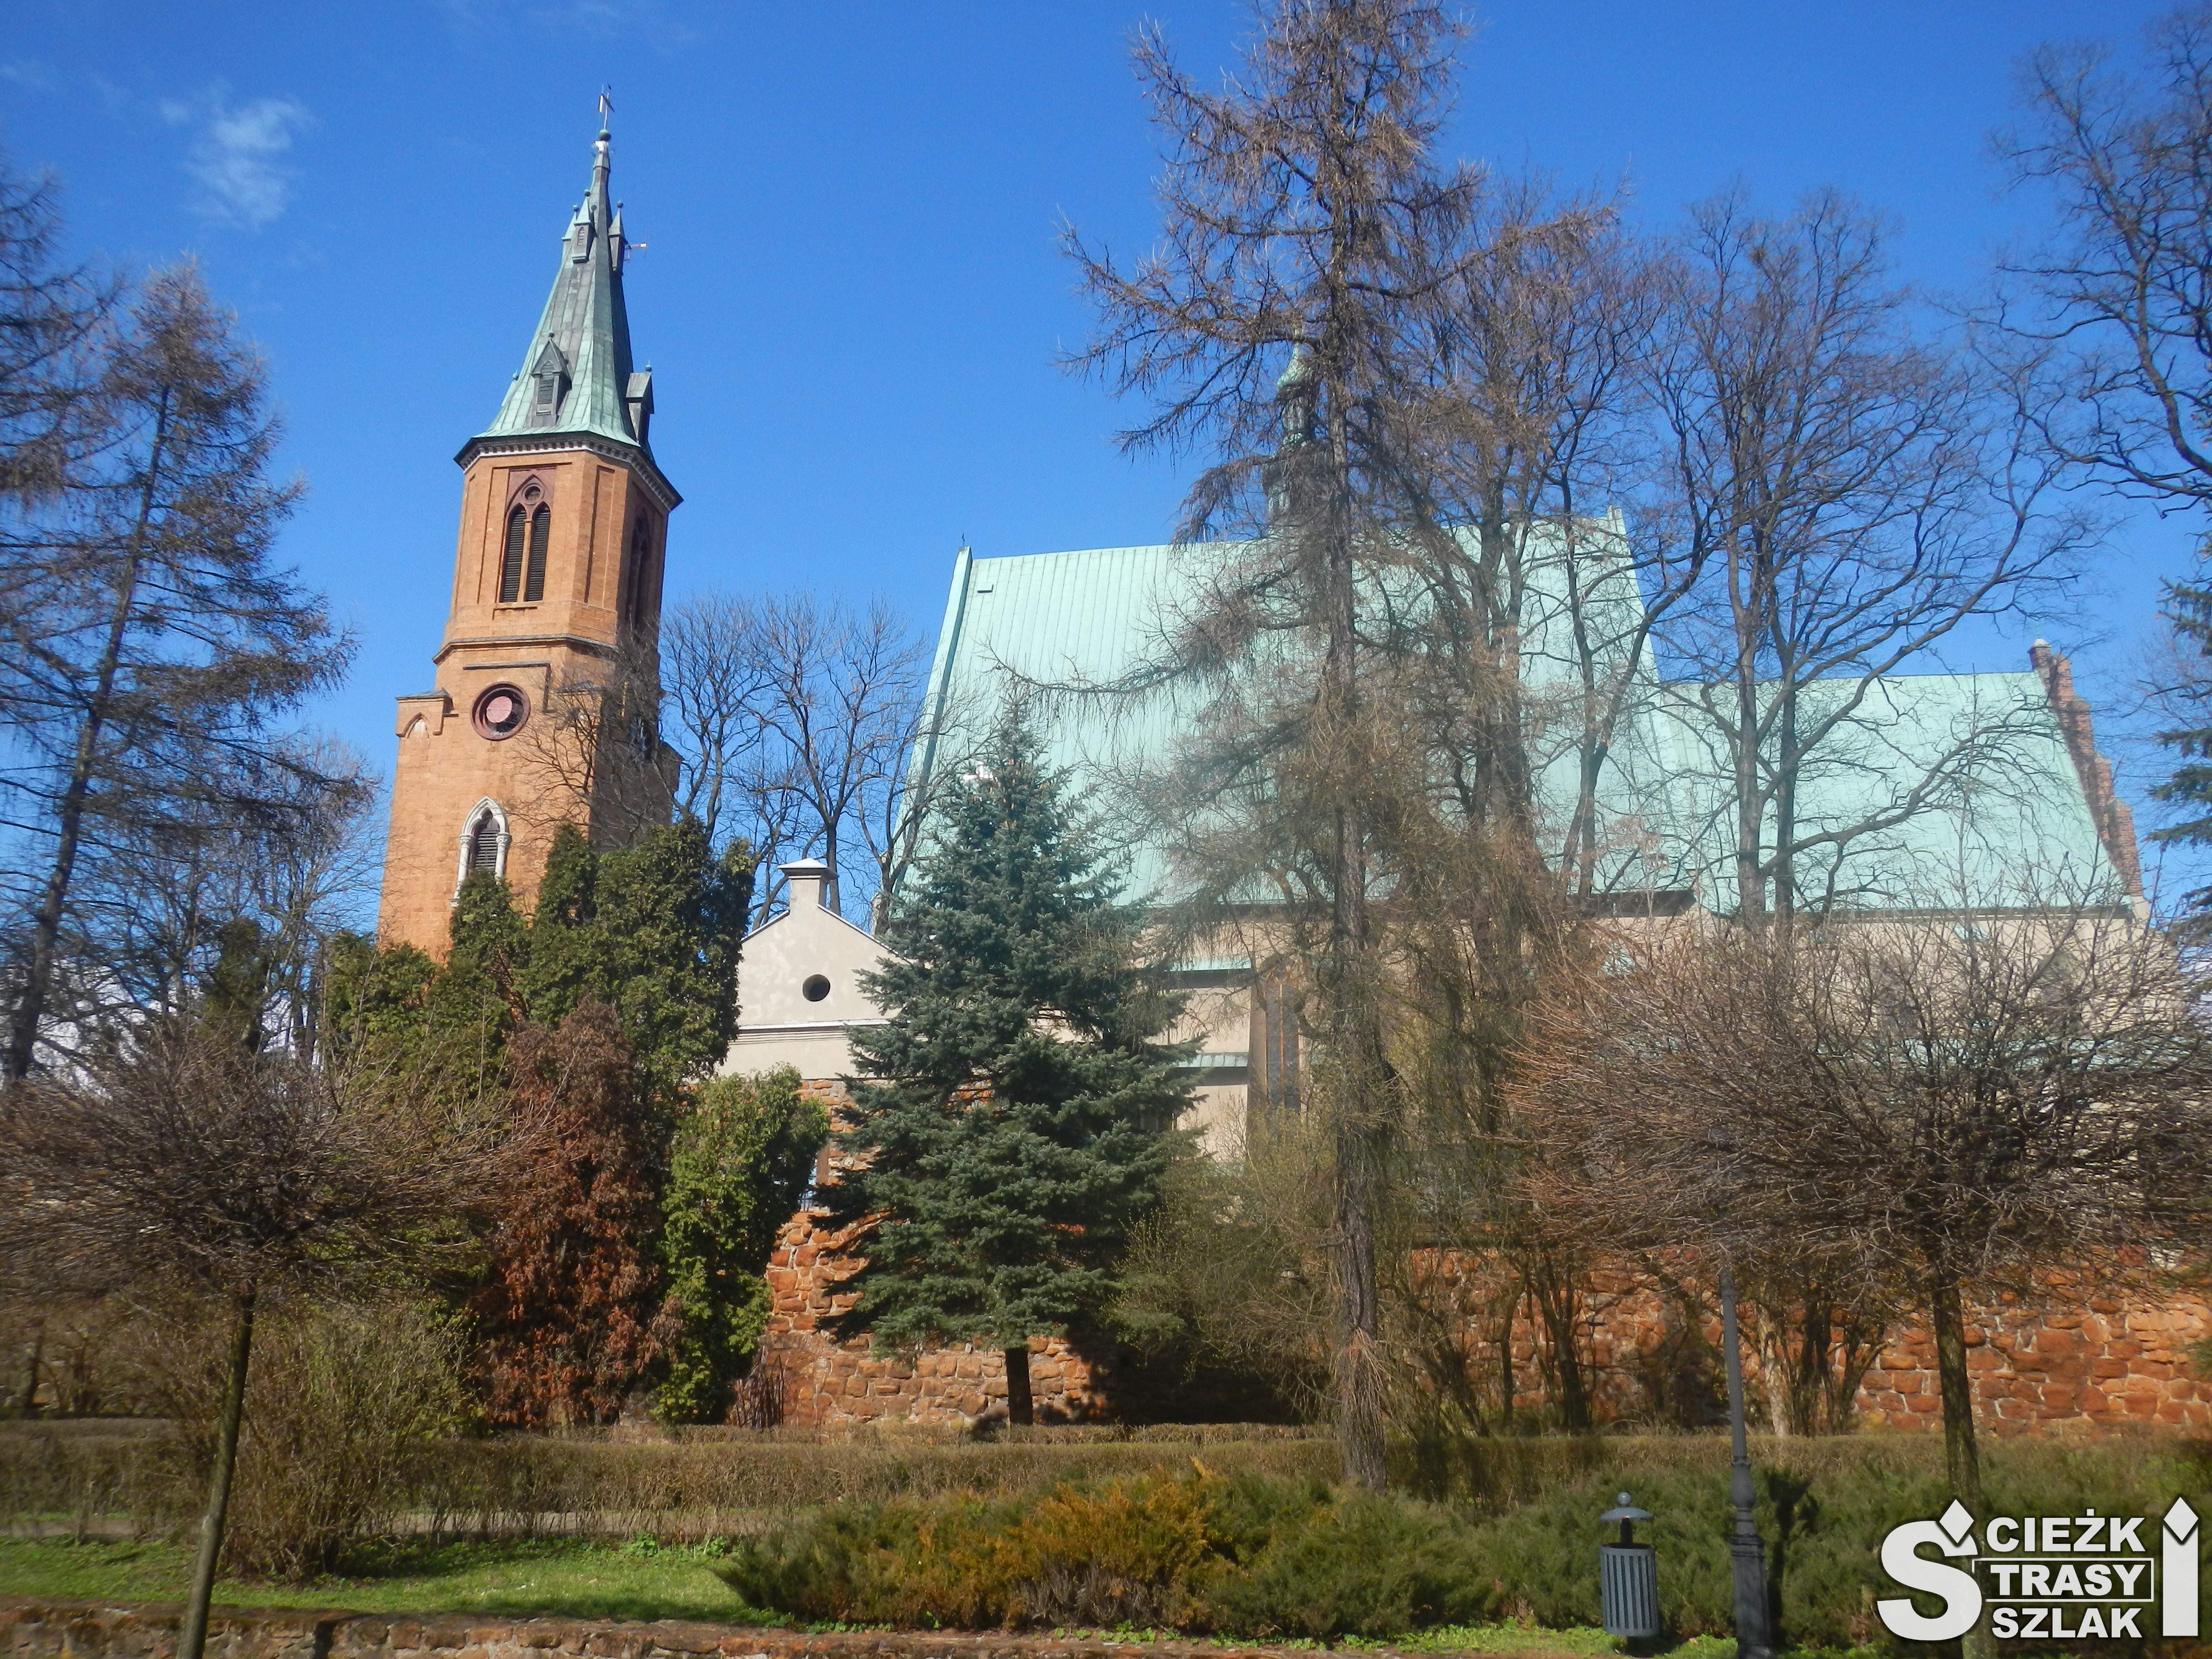 Wysoka dzwonnica przy Bazylice Św. Andrzeja w Olkuszu ze strzelistym dachem i krzyżem Gwarków Olkuskich w środku